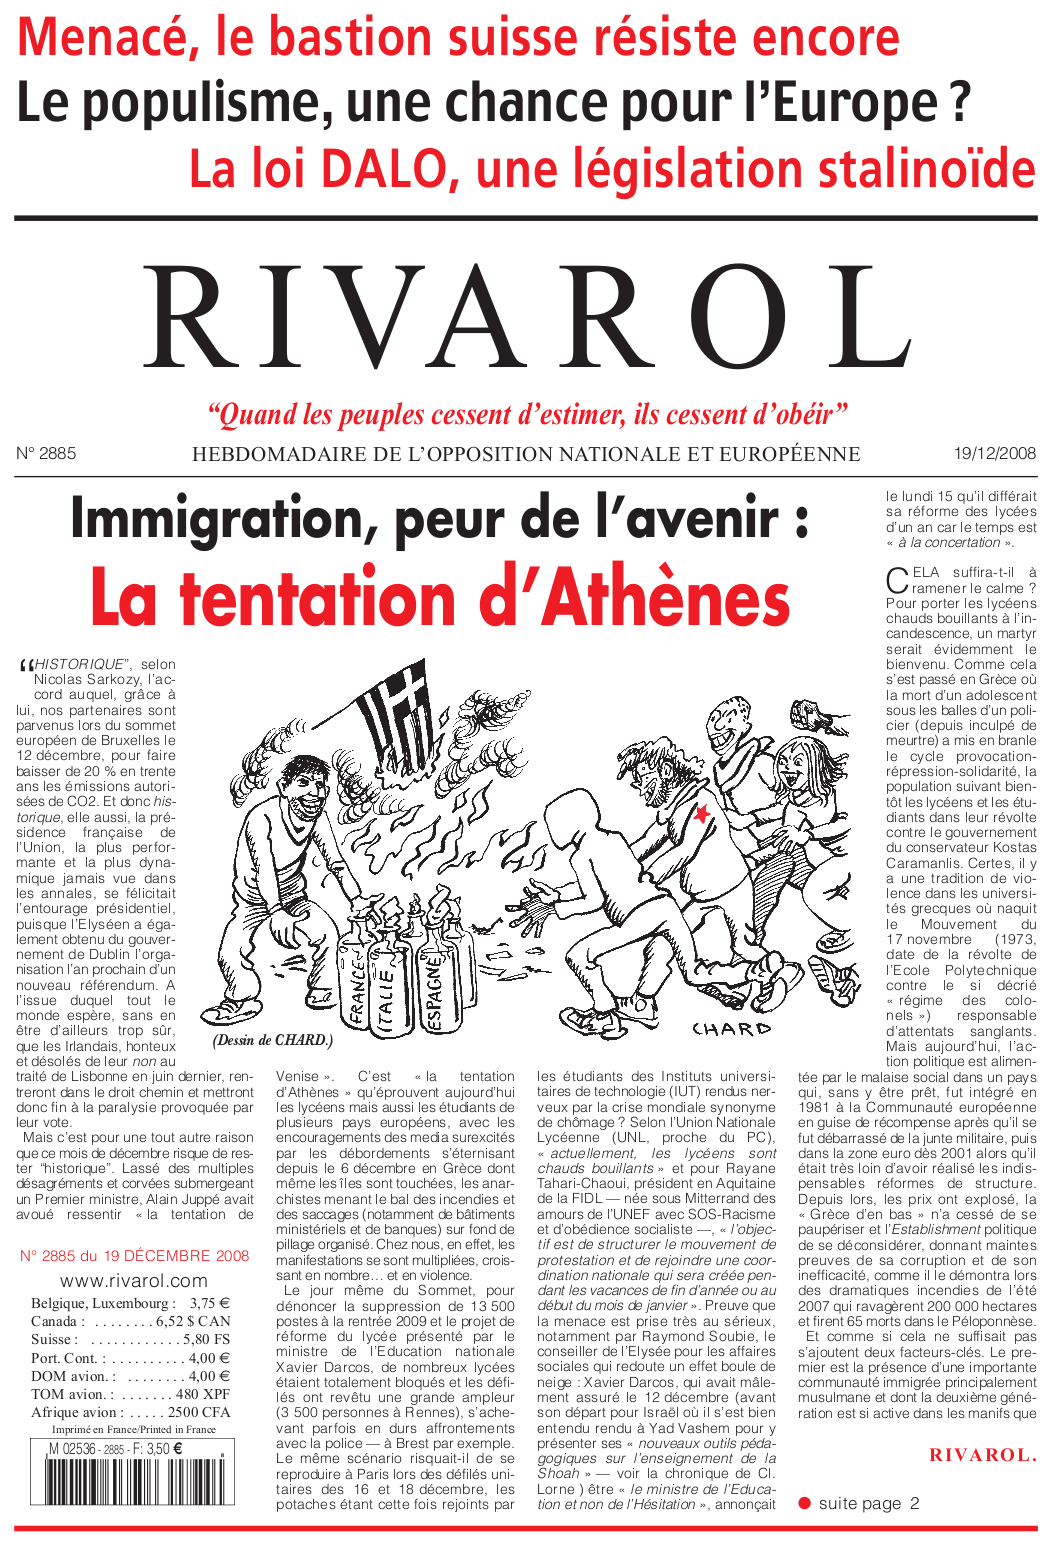 Rivarol n°2885 version numérique (PDF)